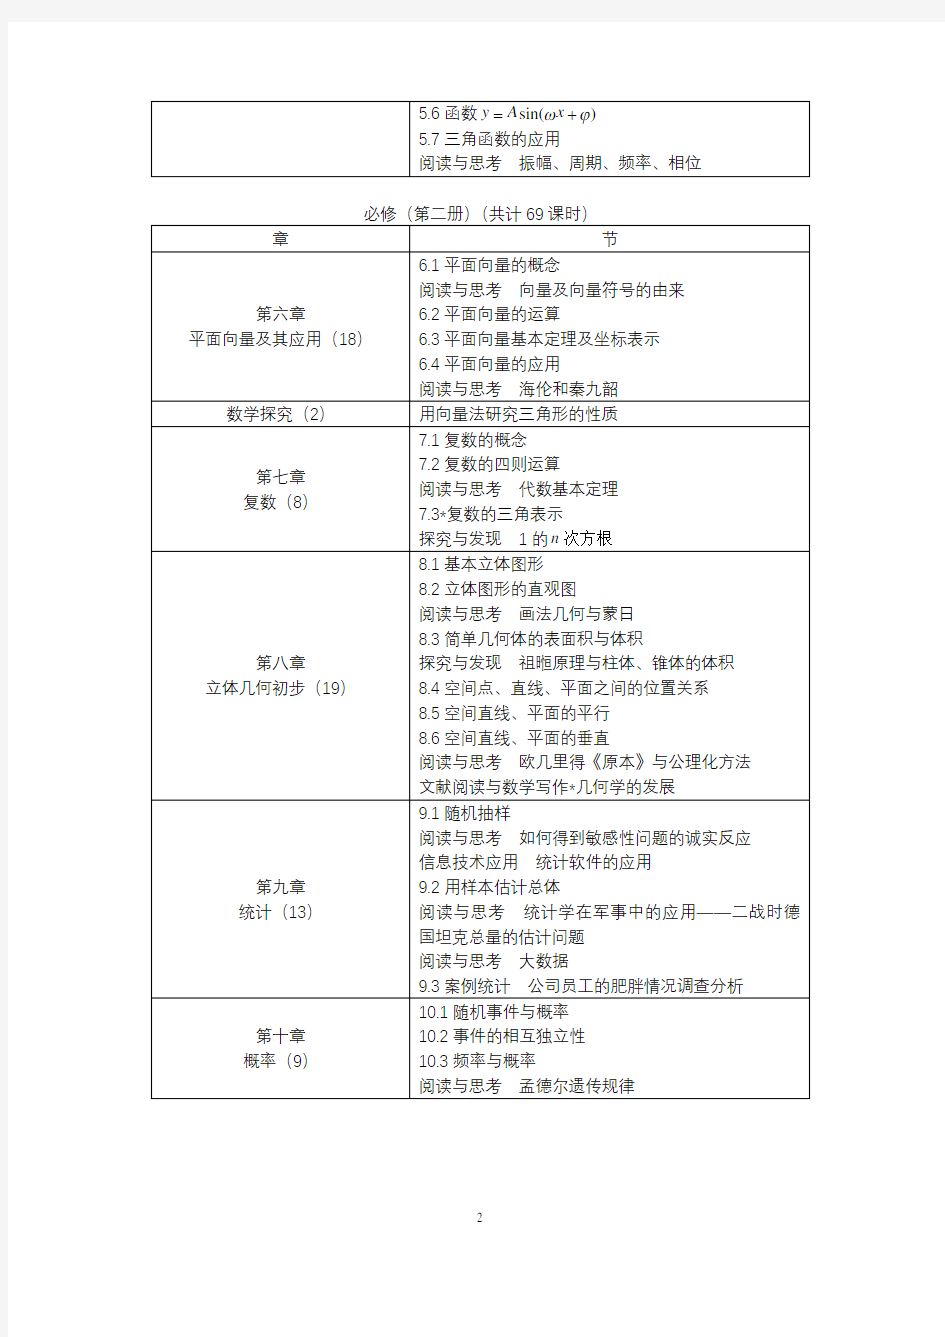 普通高中教科书数学目录(2019版)